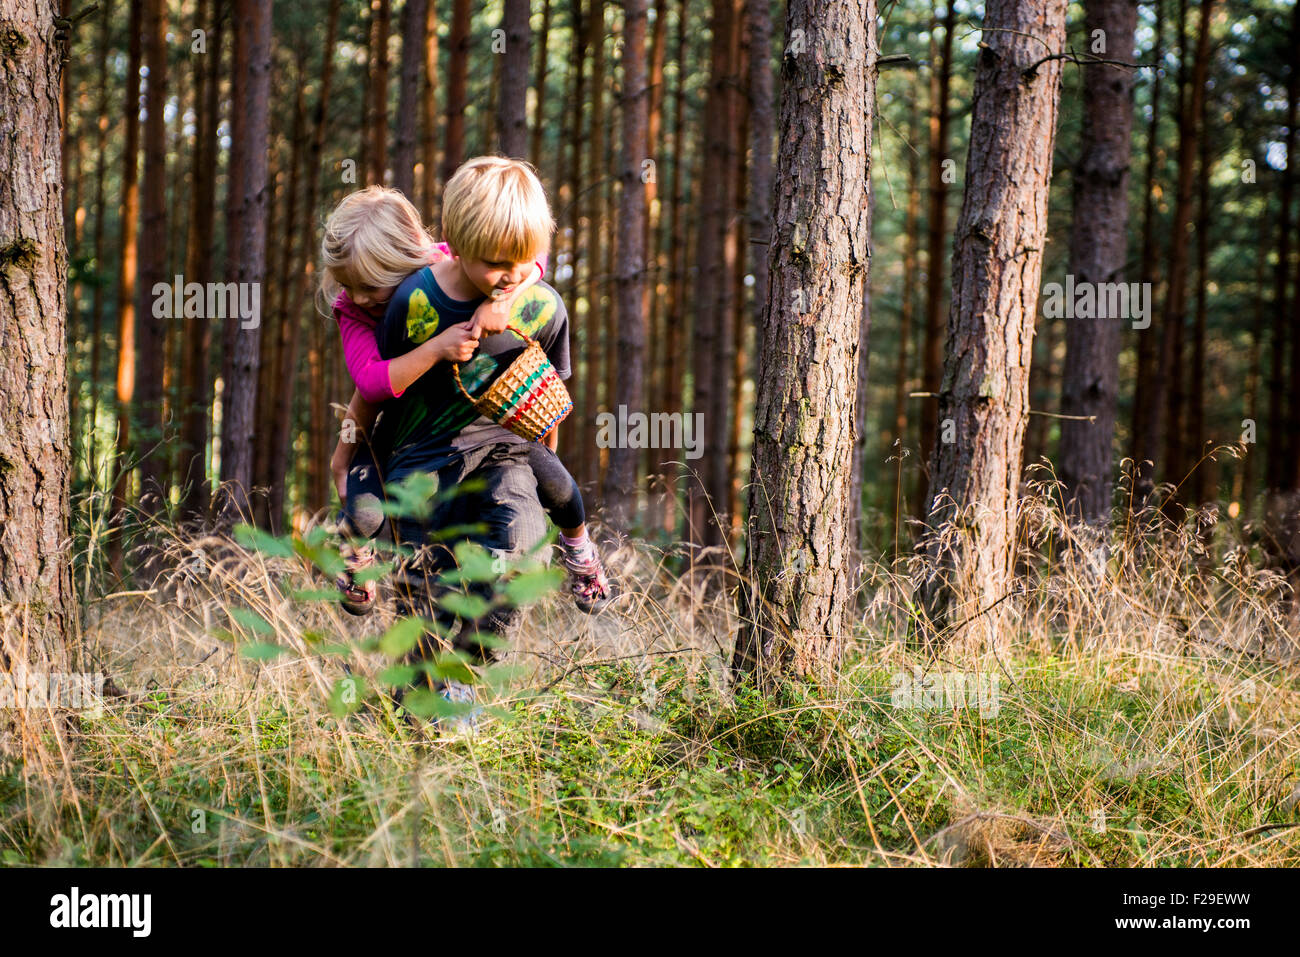 Kleiner Junge geben junge Mädchen lächelnd Huckepack Natur, Wald, Wald, Holz, Sommer, Urlaub, Geschwister, spielende Kinder, Kind Stockfoto